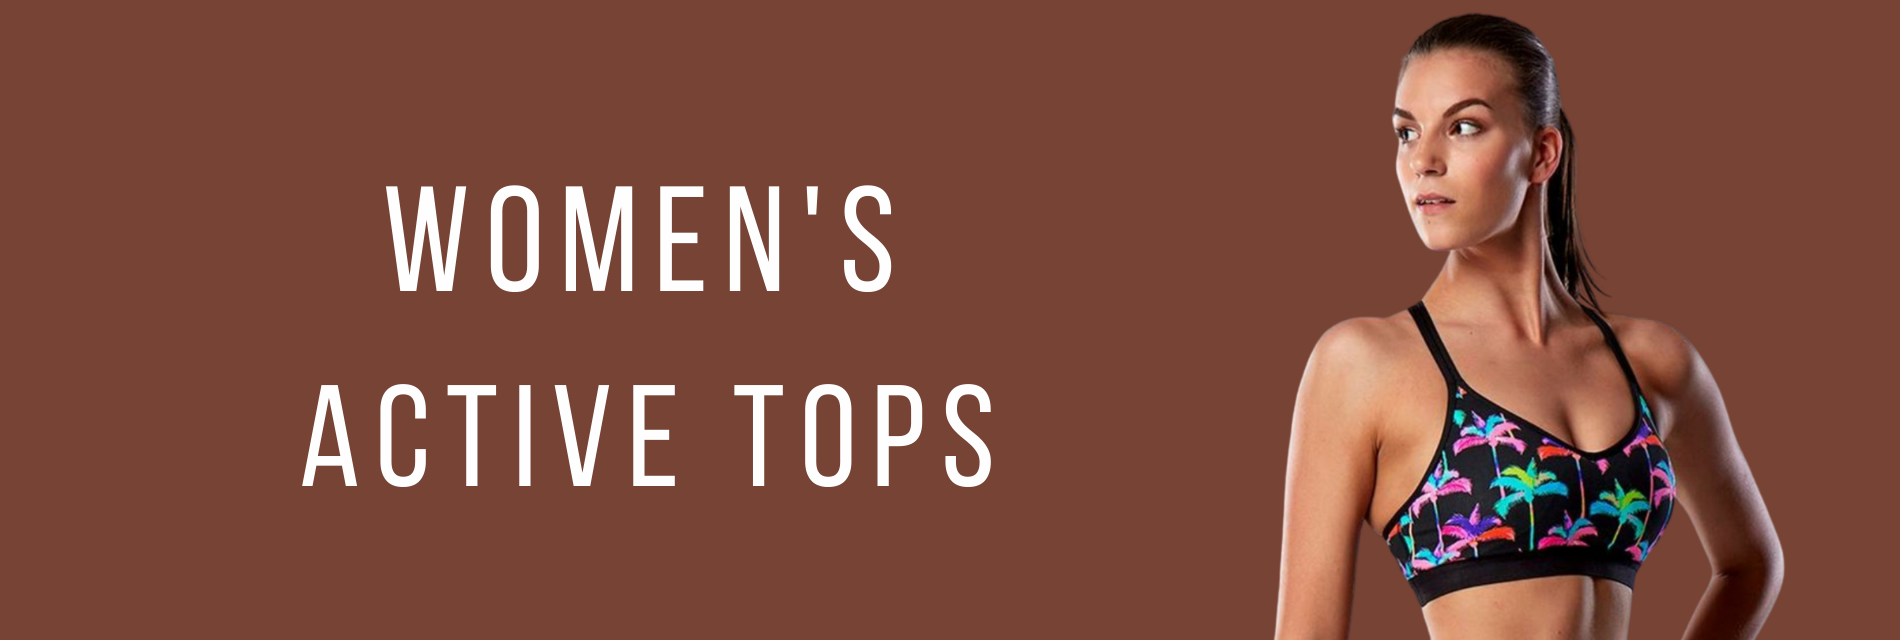 Women's Active Tops